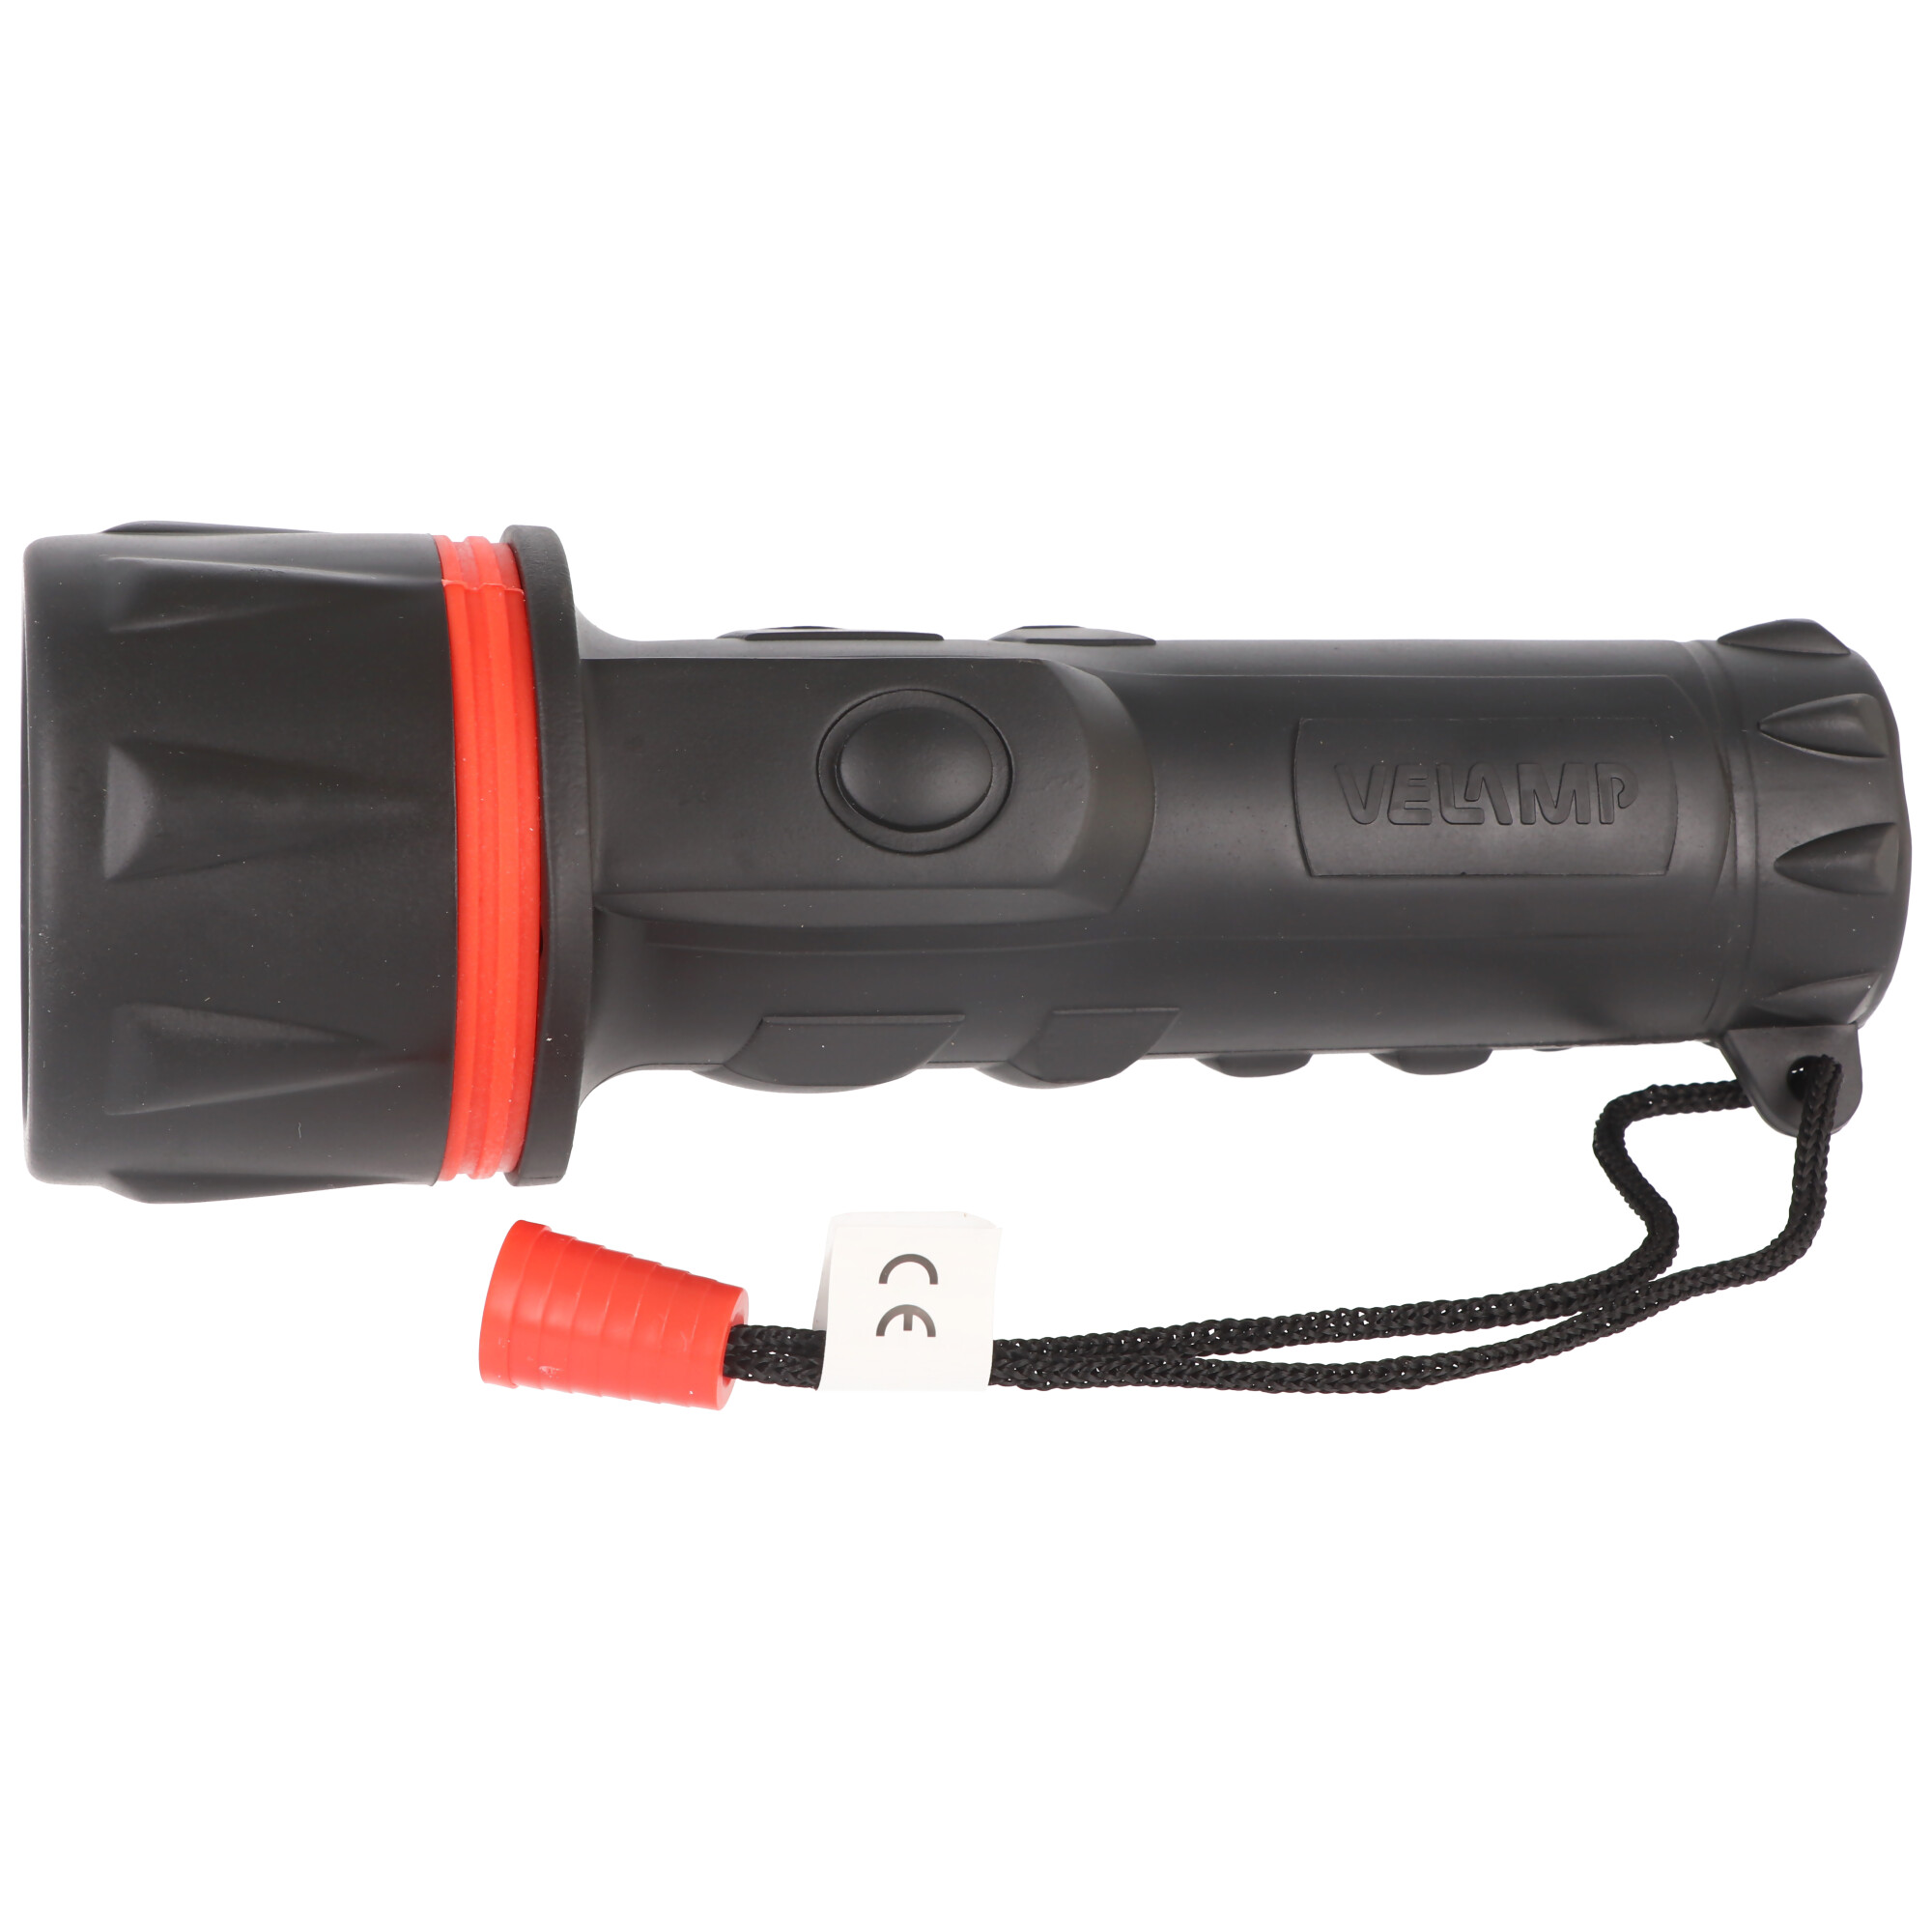 Velamp LED Gummi-Taschenlampe, 3 LEDs, wasserdicht, mit Handschlaufe, Lieferung ohne Batterien